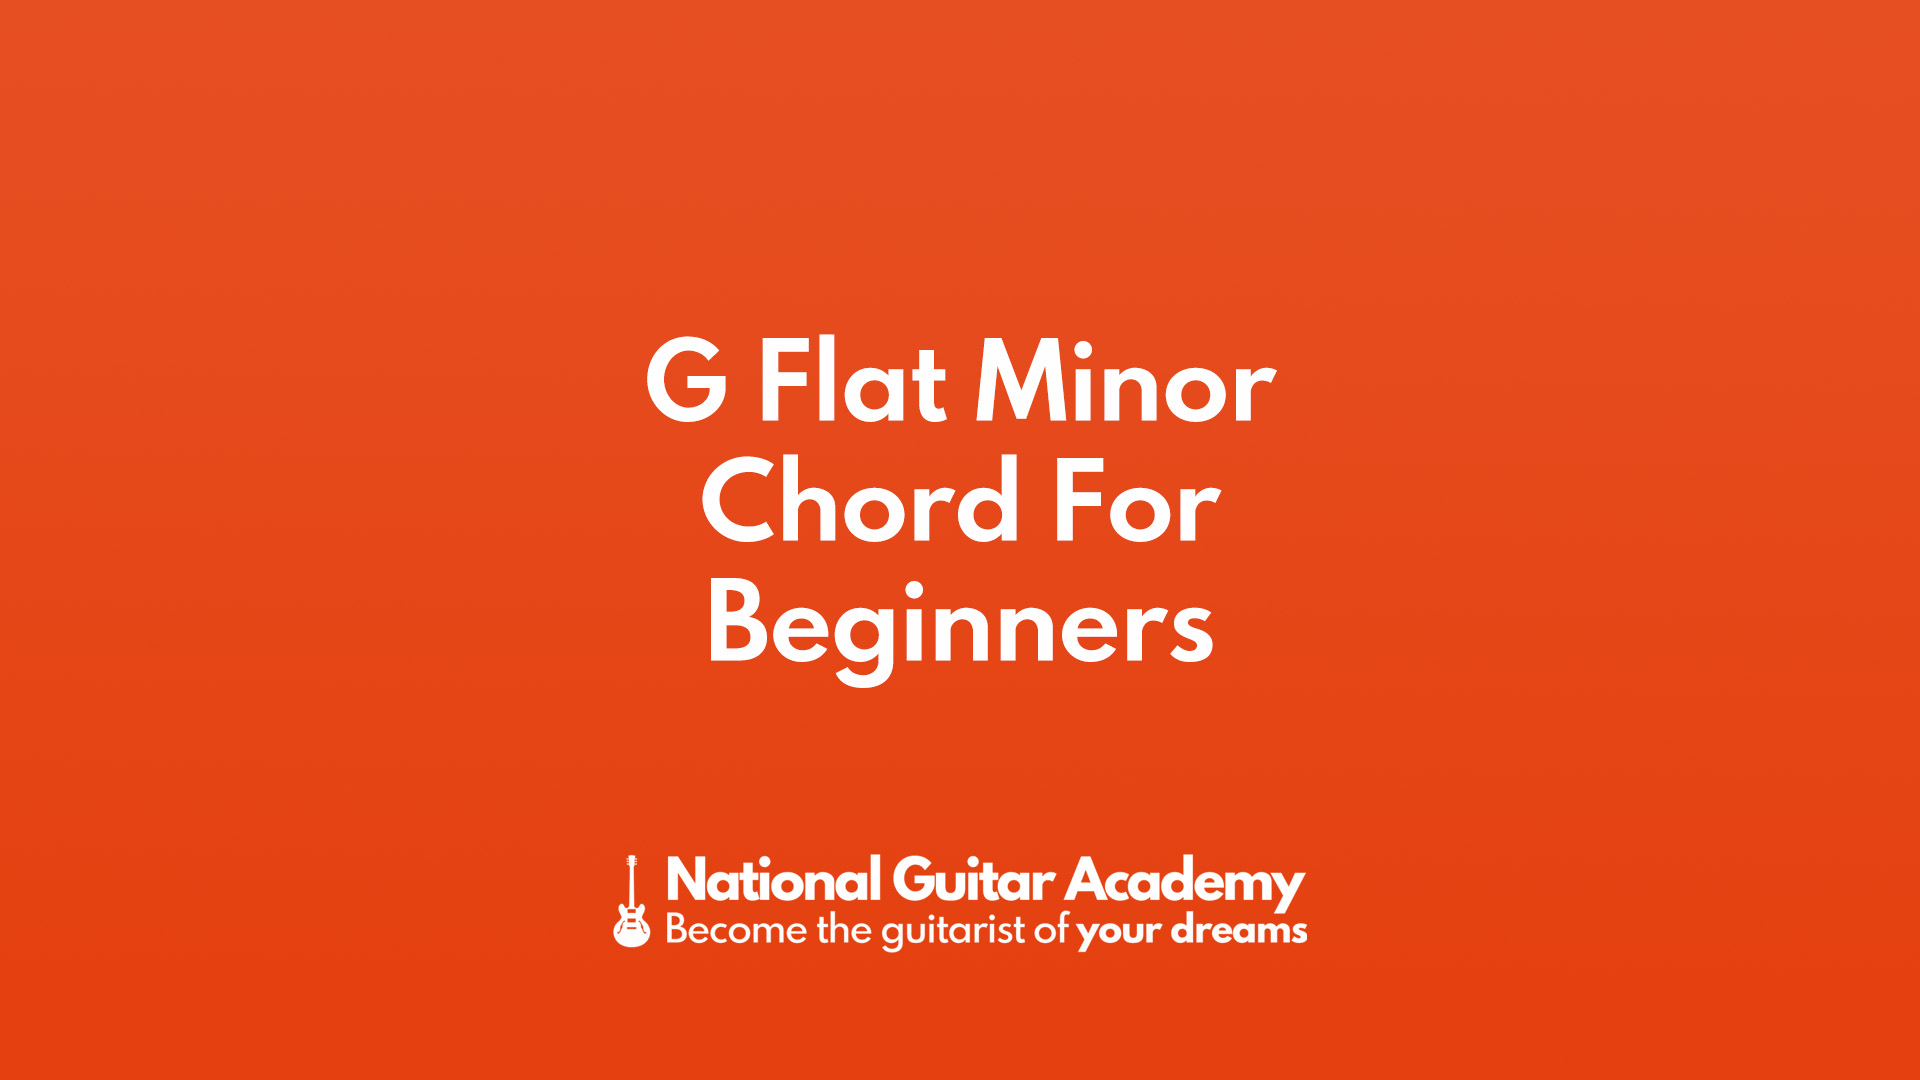 g flat minor